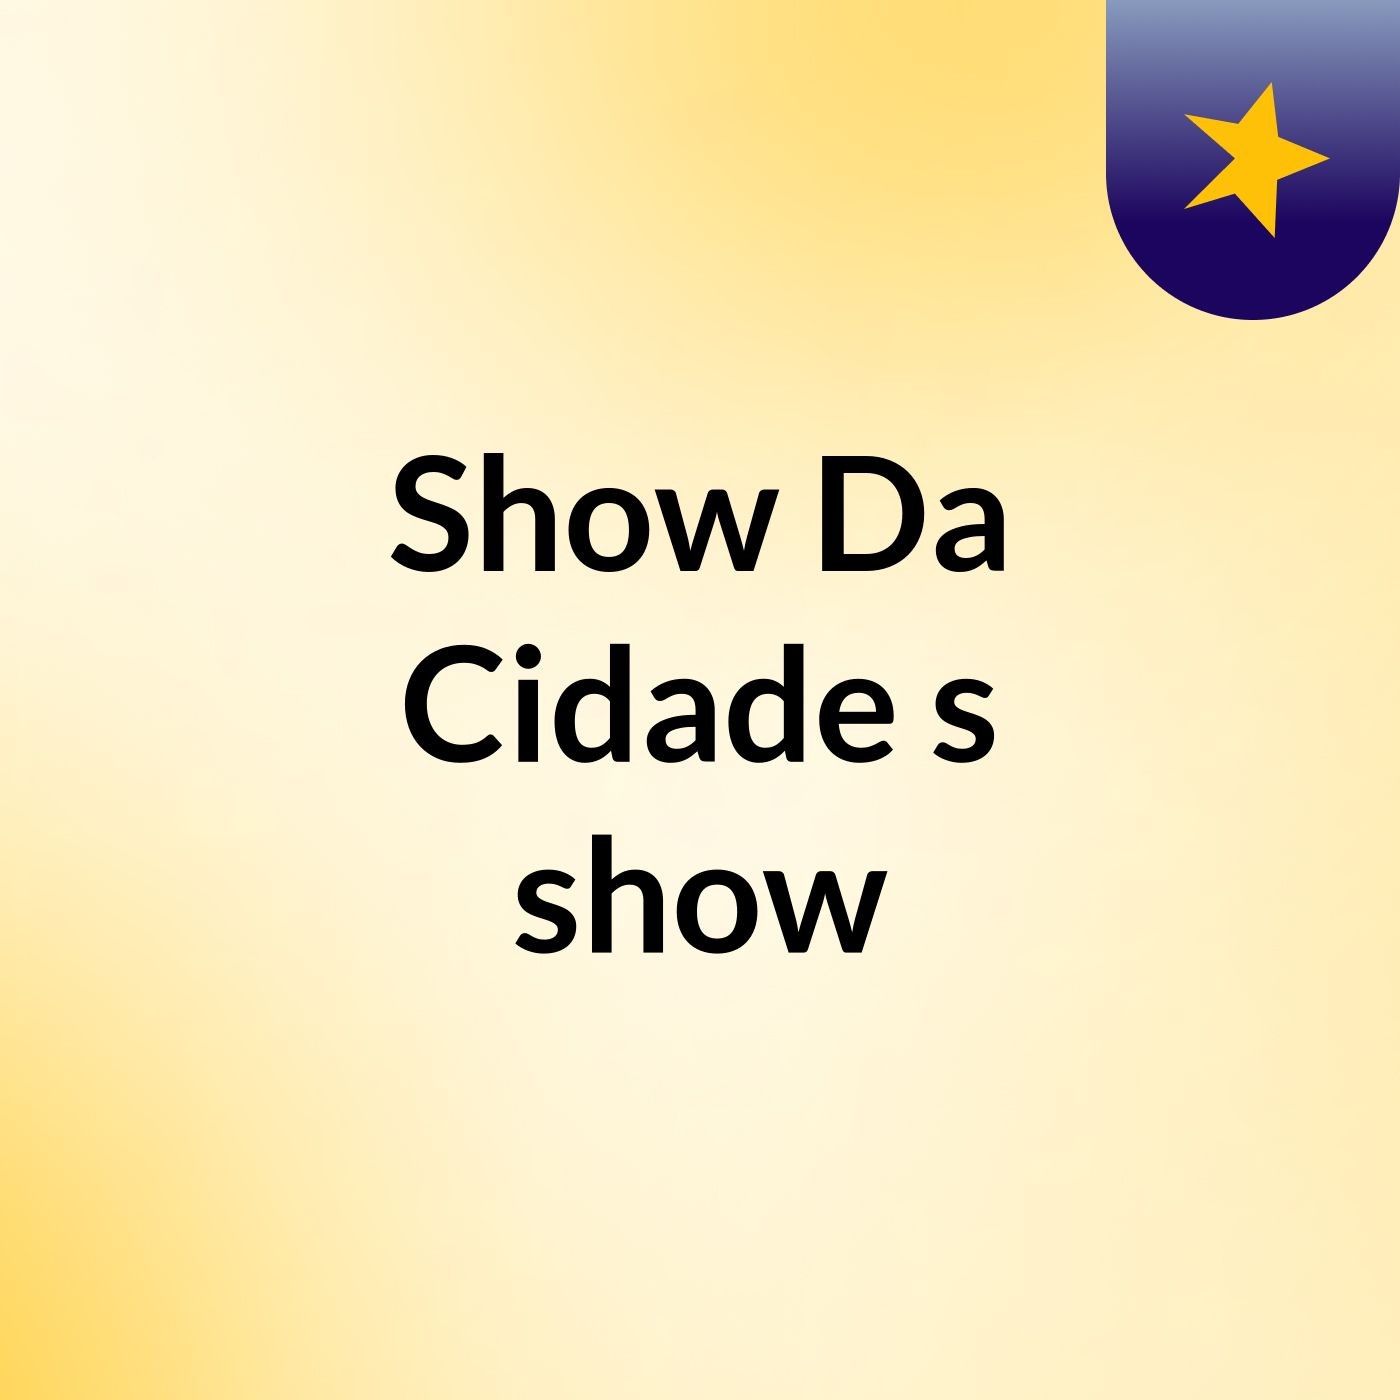 Show Da Cidade's show